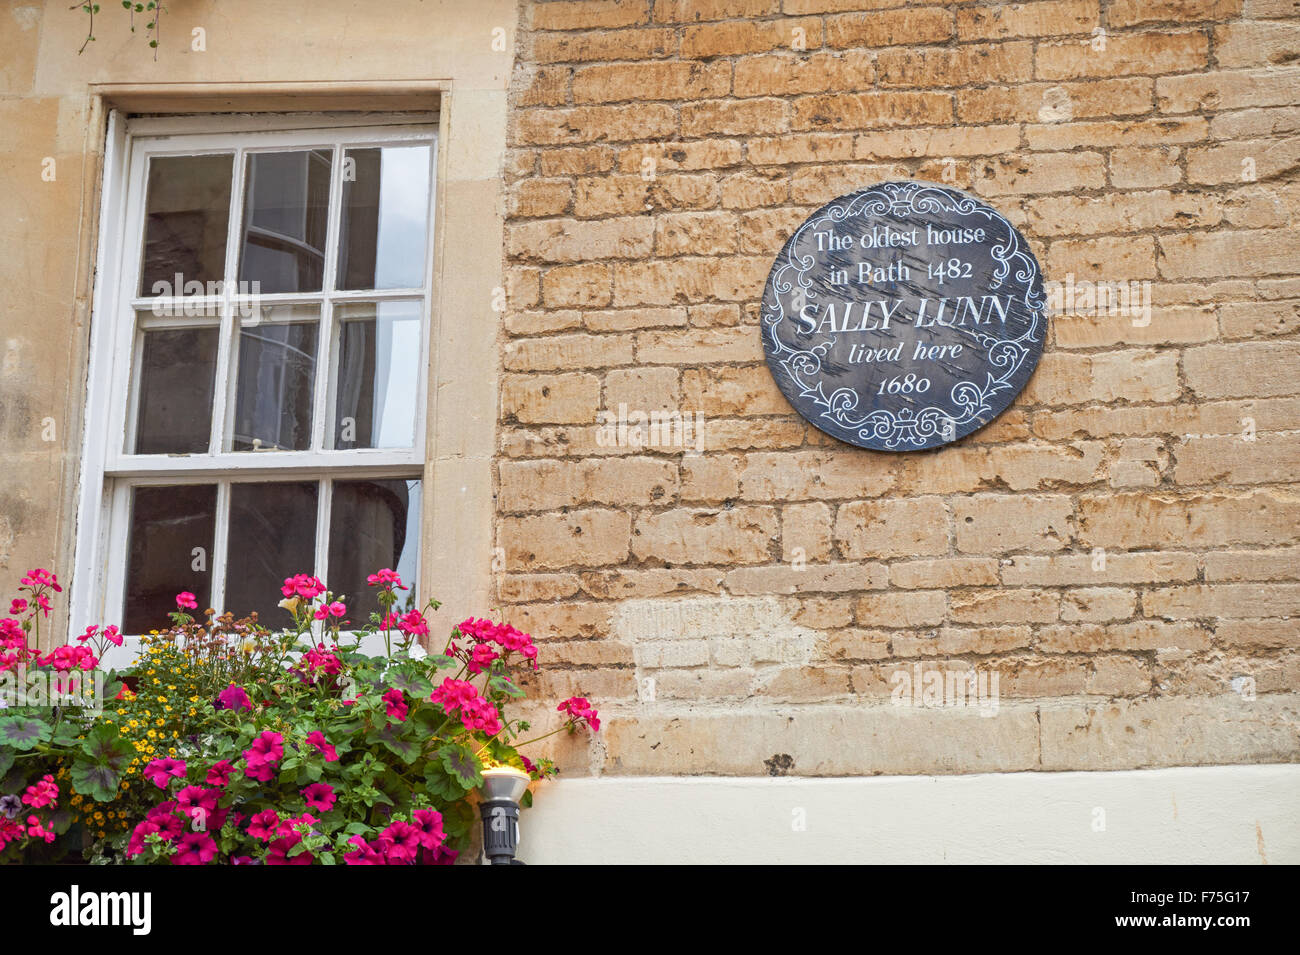 Sally Lunn’s Historic Eating House, la plus ancienne maison de Bath (v.1482), Bath Somerset Angleterre Royaume-Uni Banque D'Images